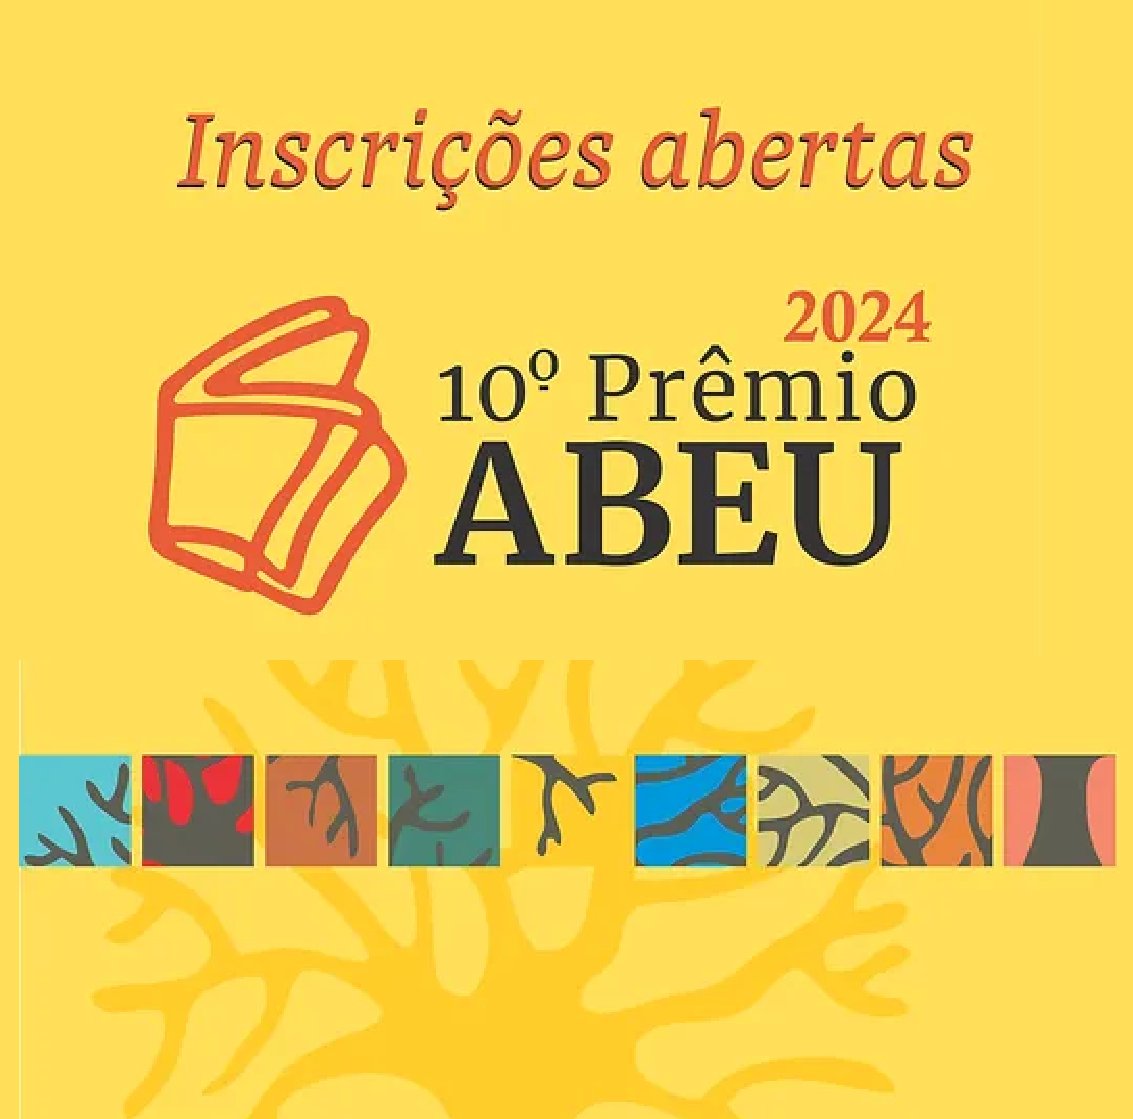 #Convocatoria 🇧🇷  || Está abierta la convocatoria para participar en el 10° Premio ABEU, que reconoce las mejores publicaciones universitarias y académicas de Brasil en diversas categorías. 

🏆 Bases de participación: 👇
premioabeu.com.br